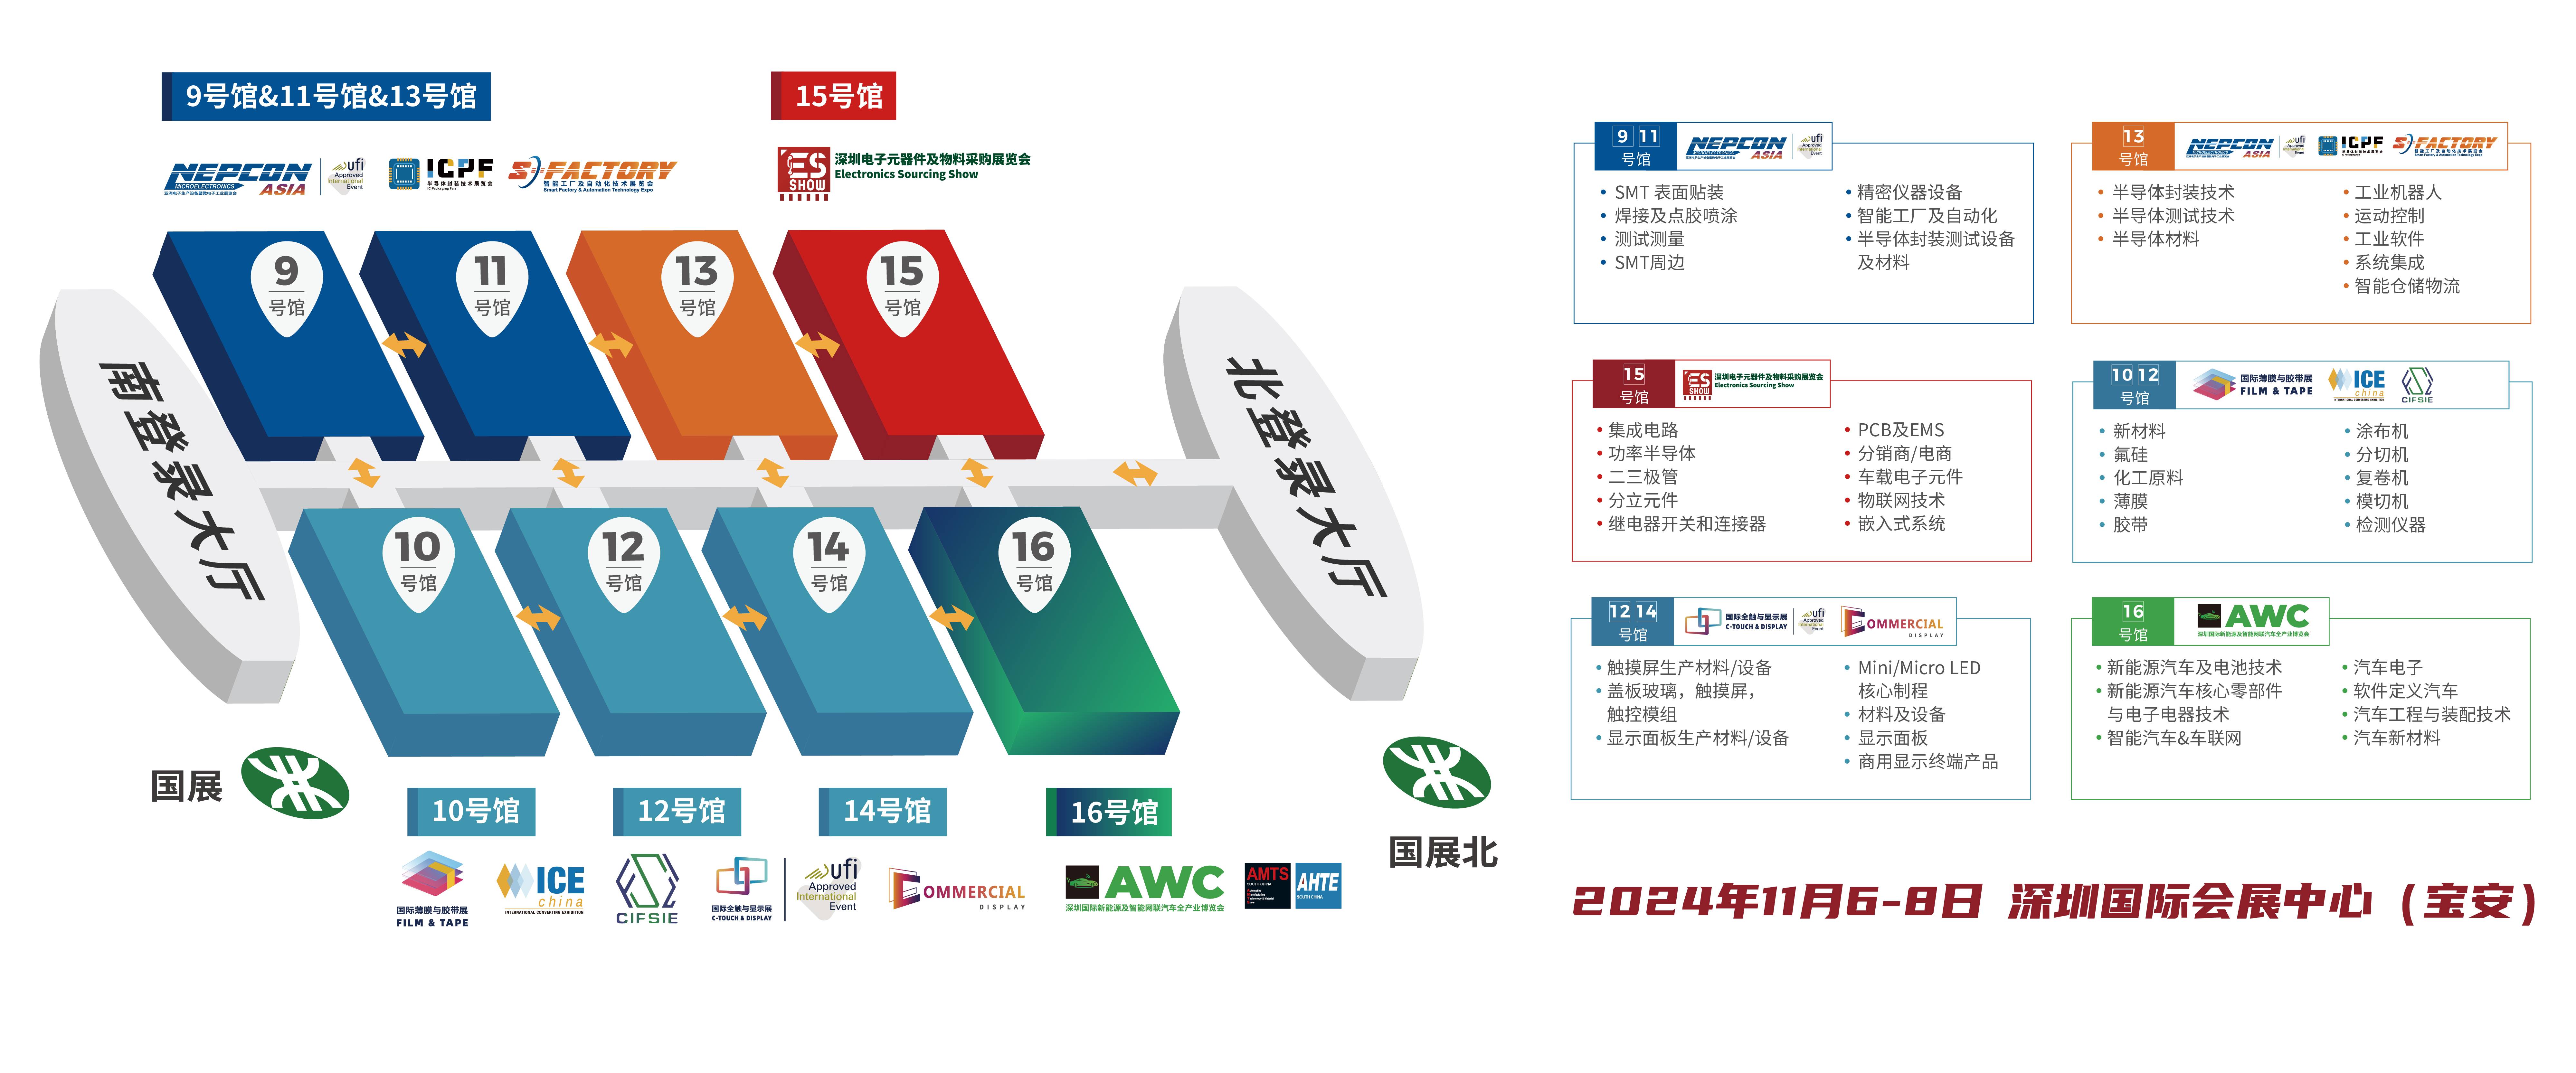 深圳电子展 MCU 智能电表 华南电子展 中国电子展